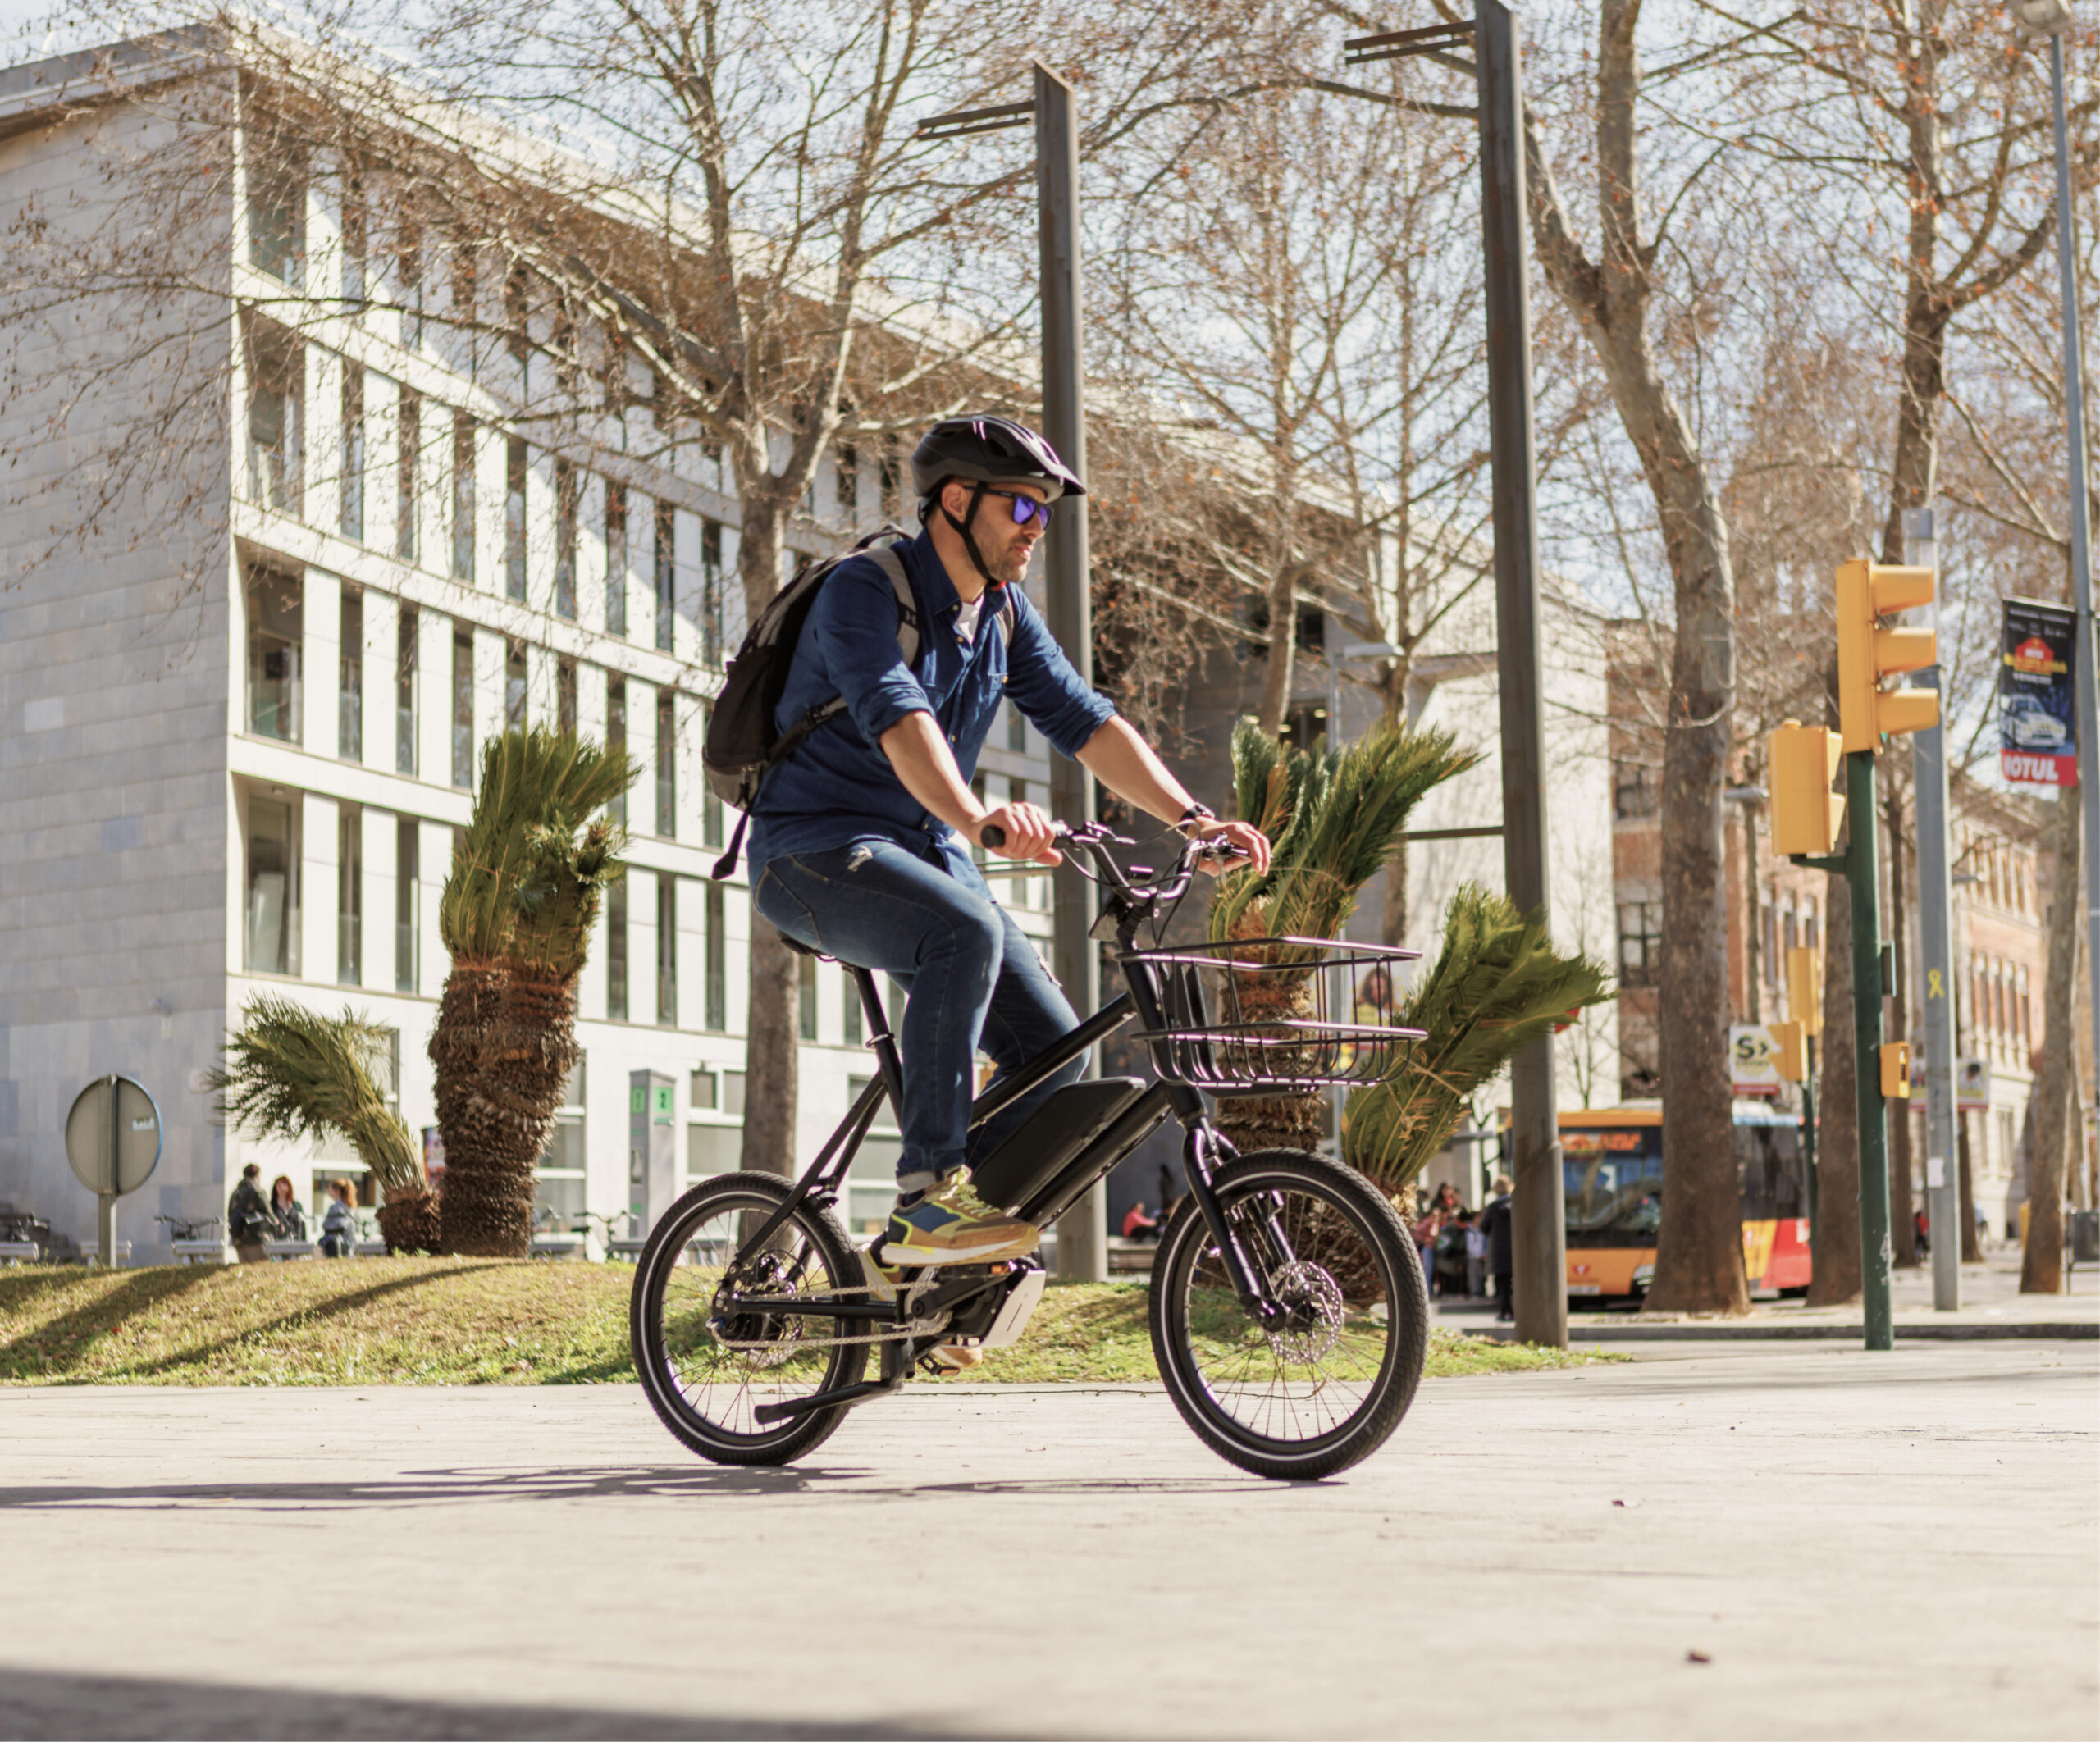 moverse por la ciudad en bicicleta es una opció sostenible